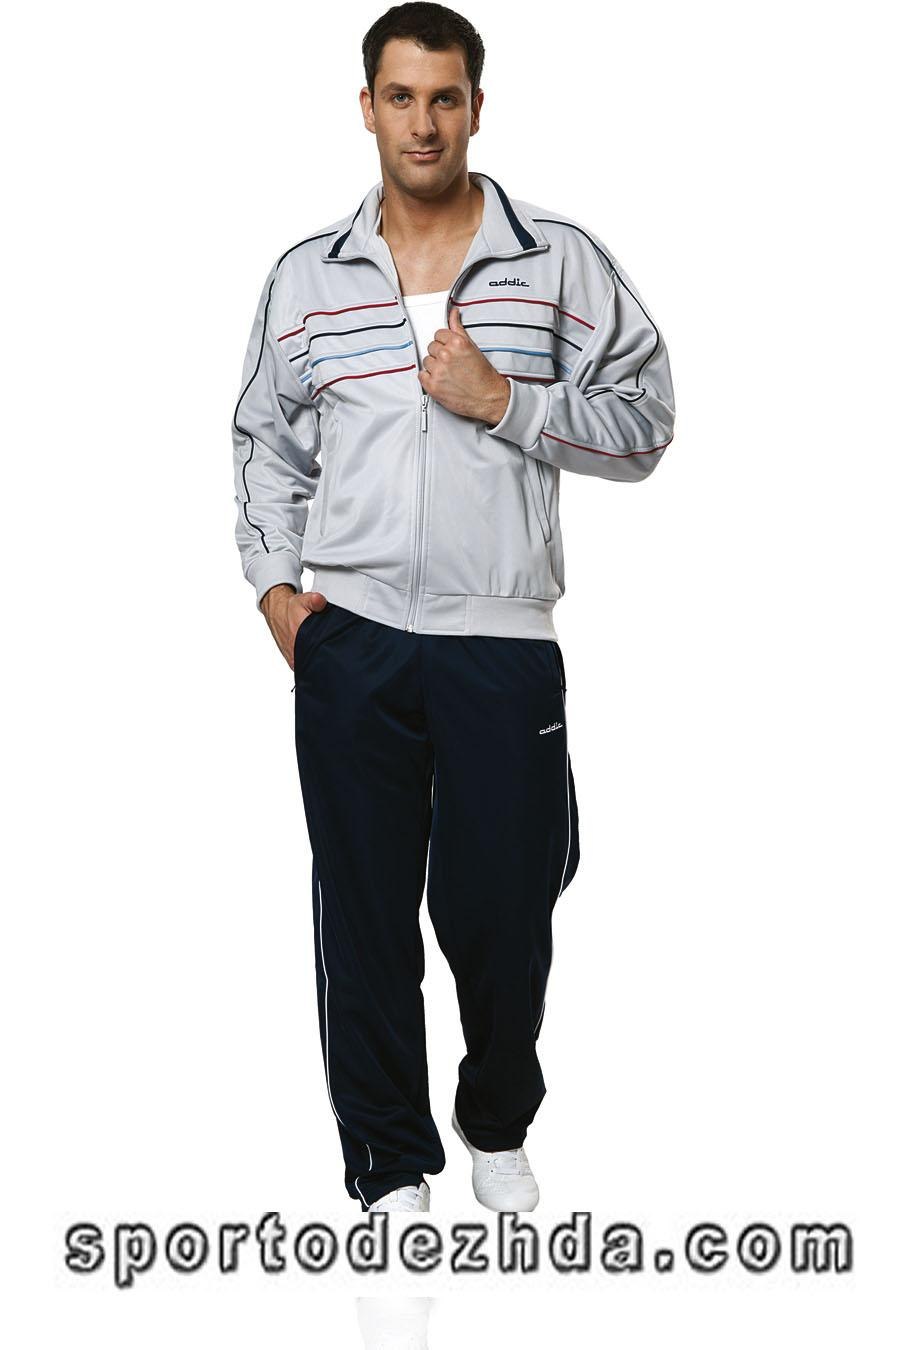 Спортивный мужской 50. Спортивный костюм Аддик мужской. Спортивный костюм Addic мужской белый. Спортивный костюм мужской Addic Бундес 113 \1. Спортивный костюм Addic d-02n Байер.